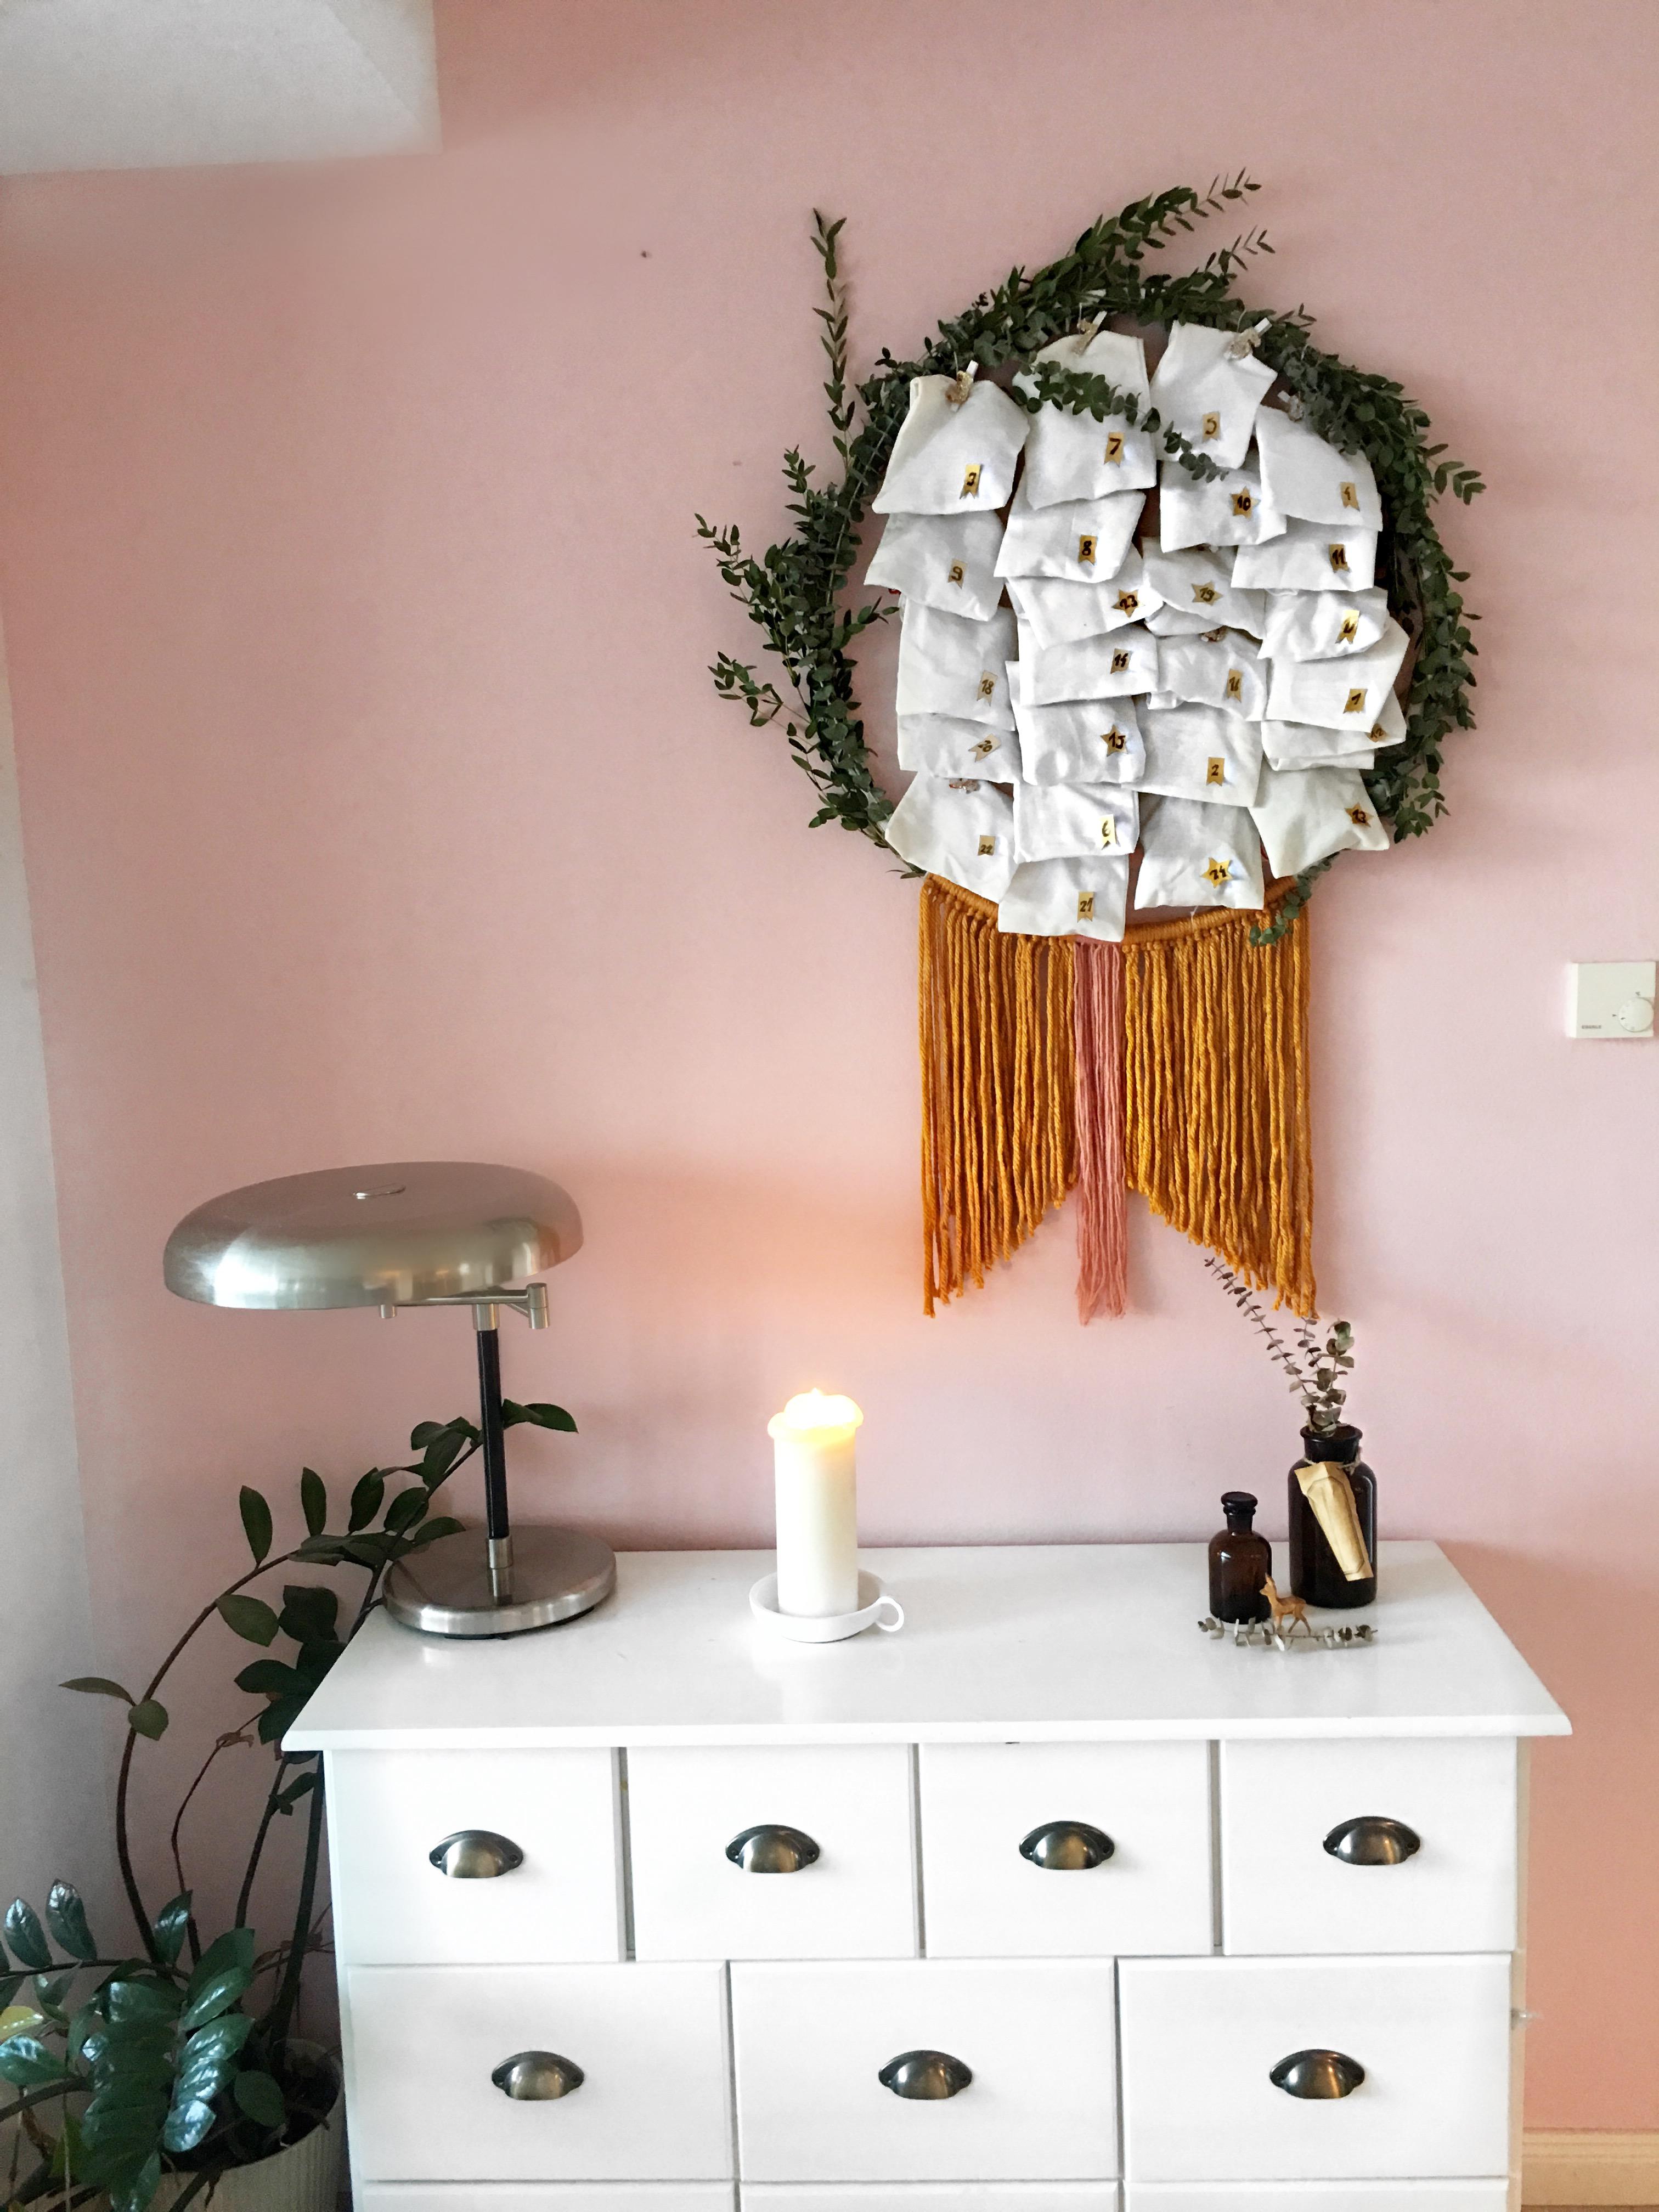 #diy #wreath #adventskranz #adventskalender #eukalyptus  #livingroom #wohnzimmer #basten